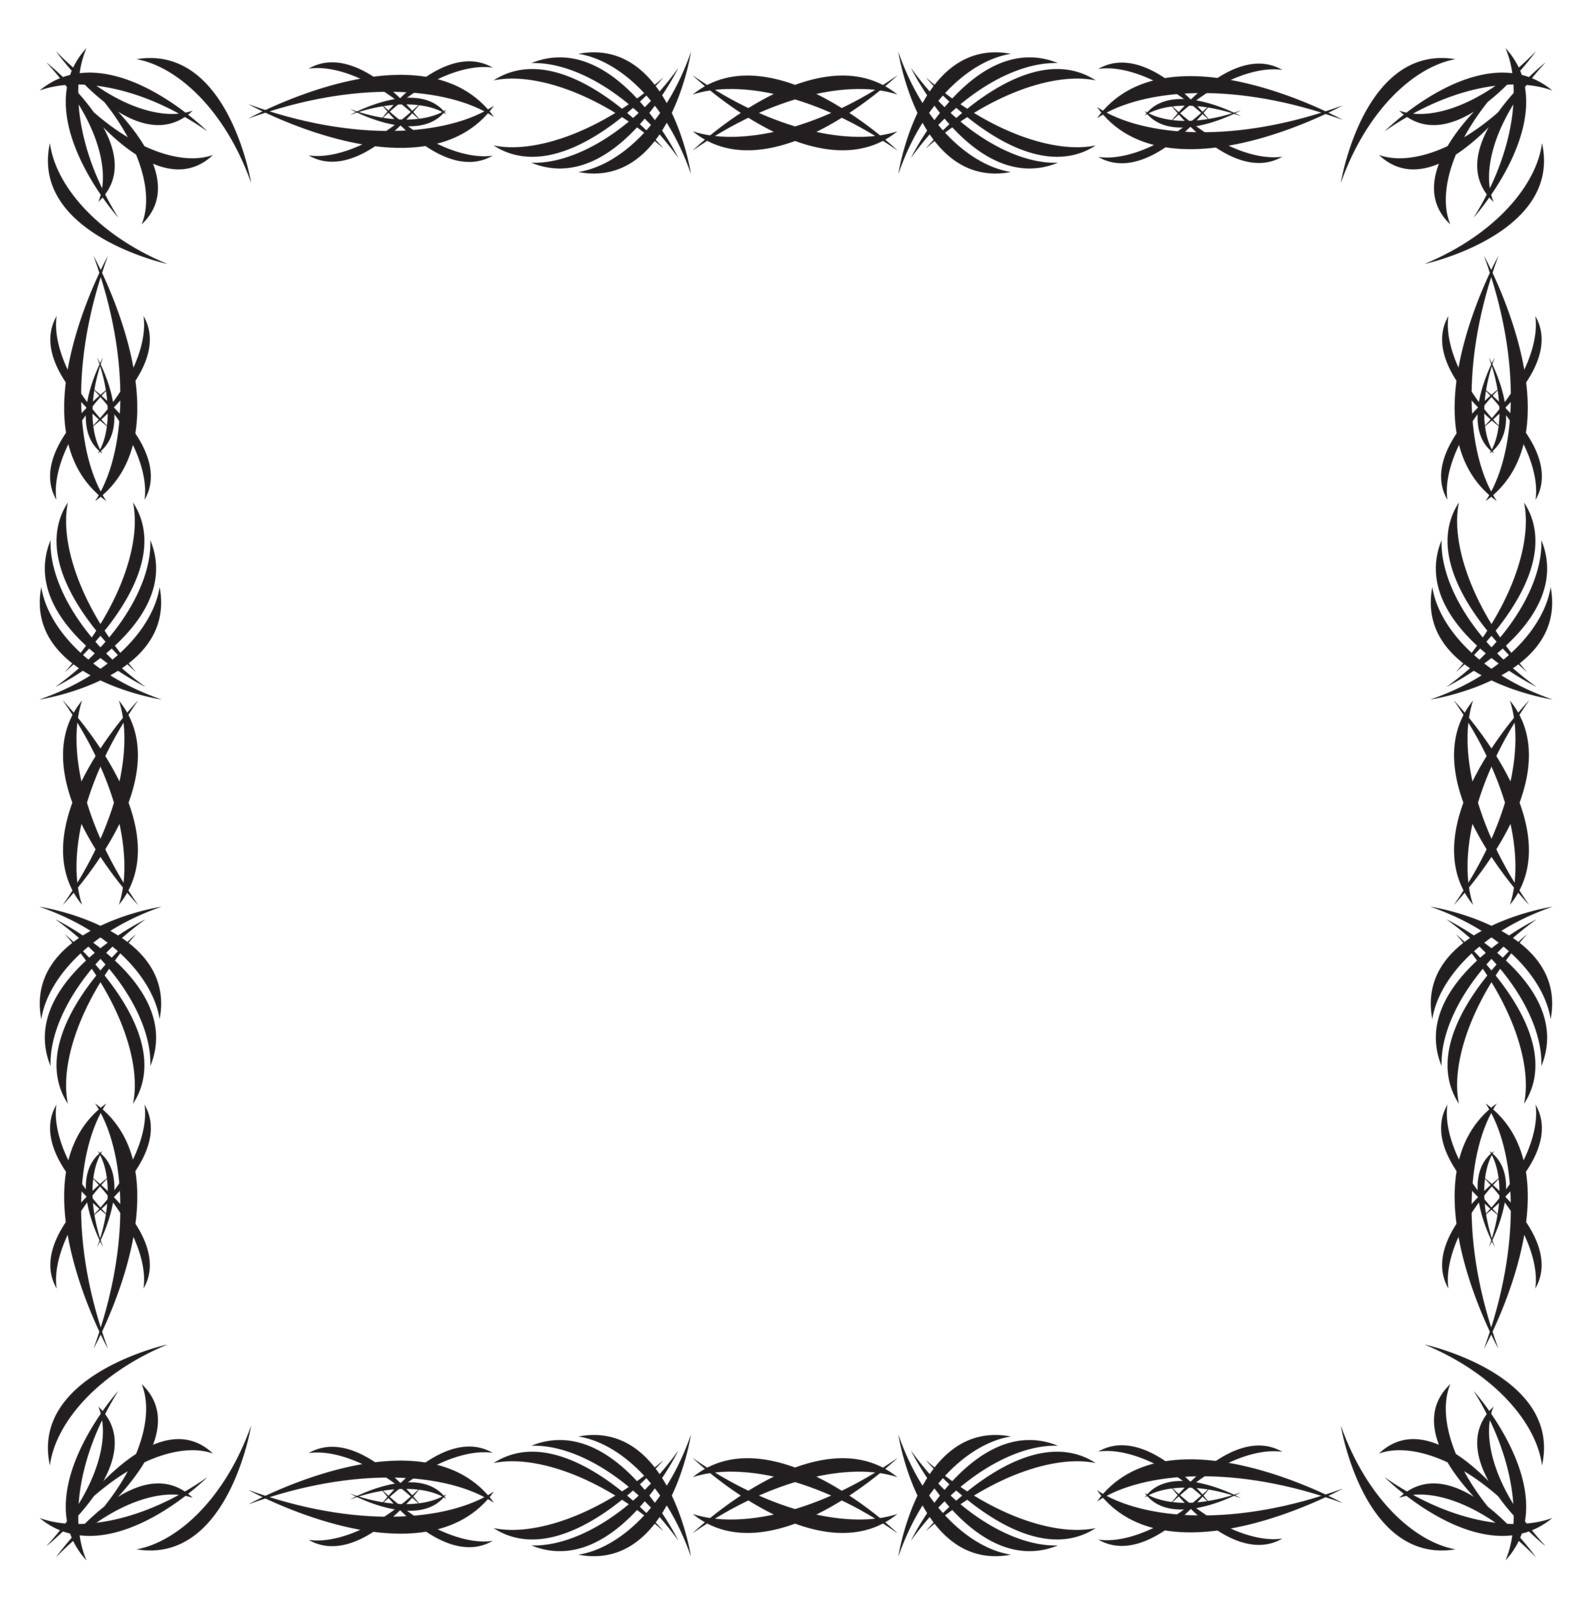 Framework drawn by a Gothic black pattern